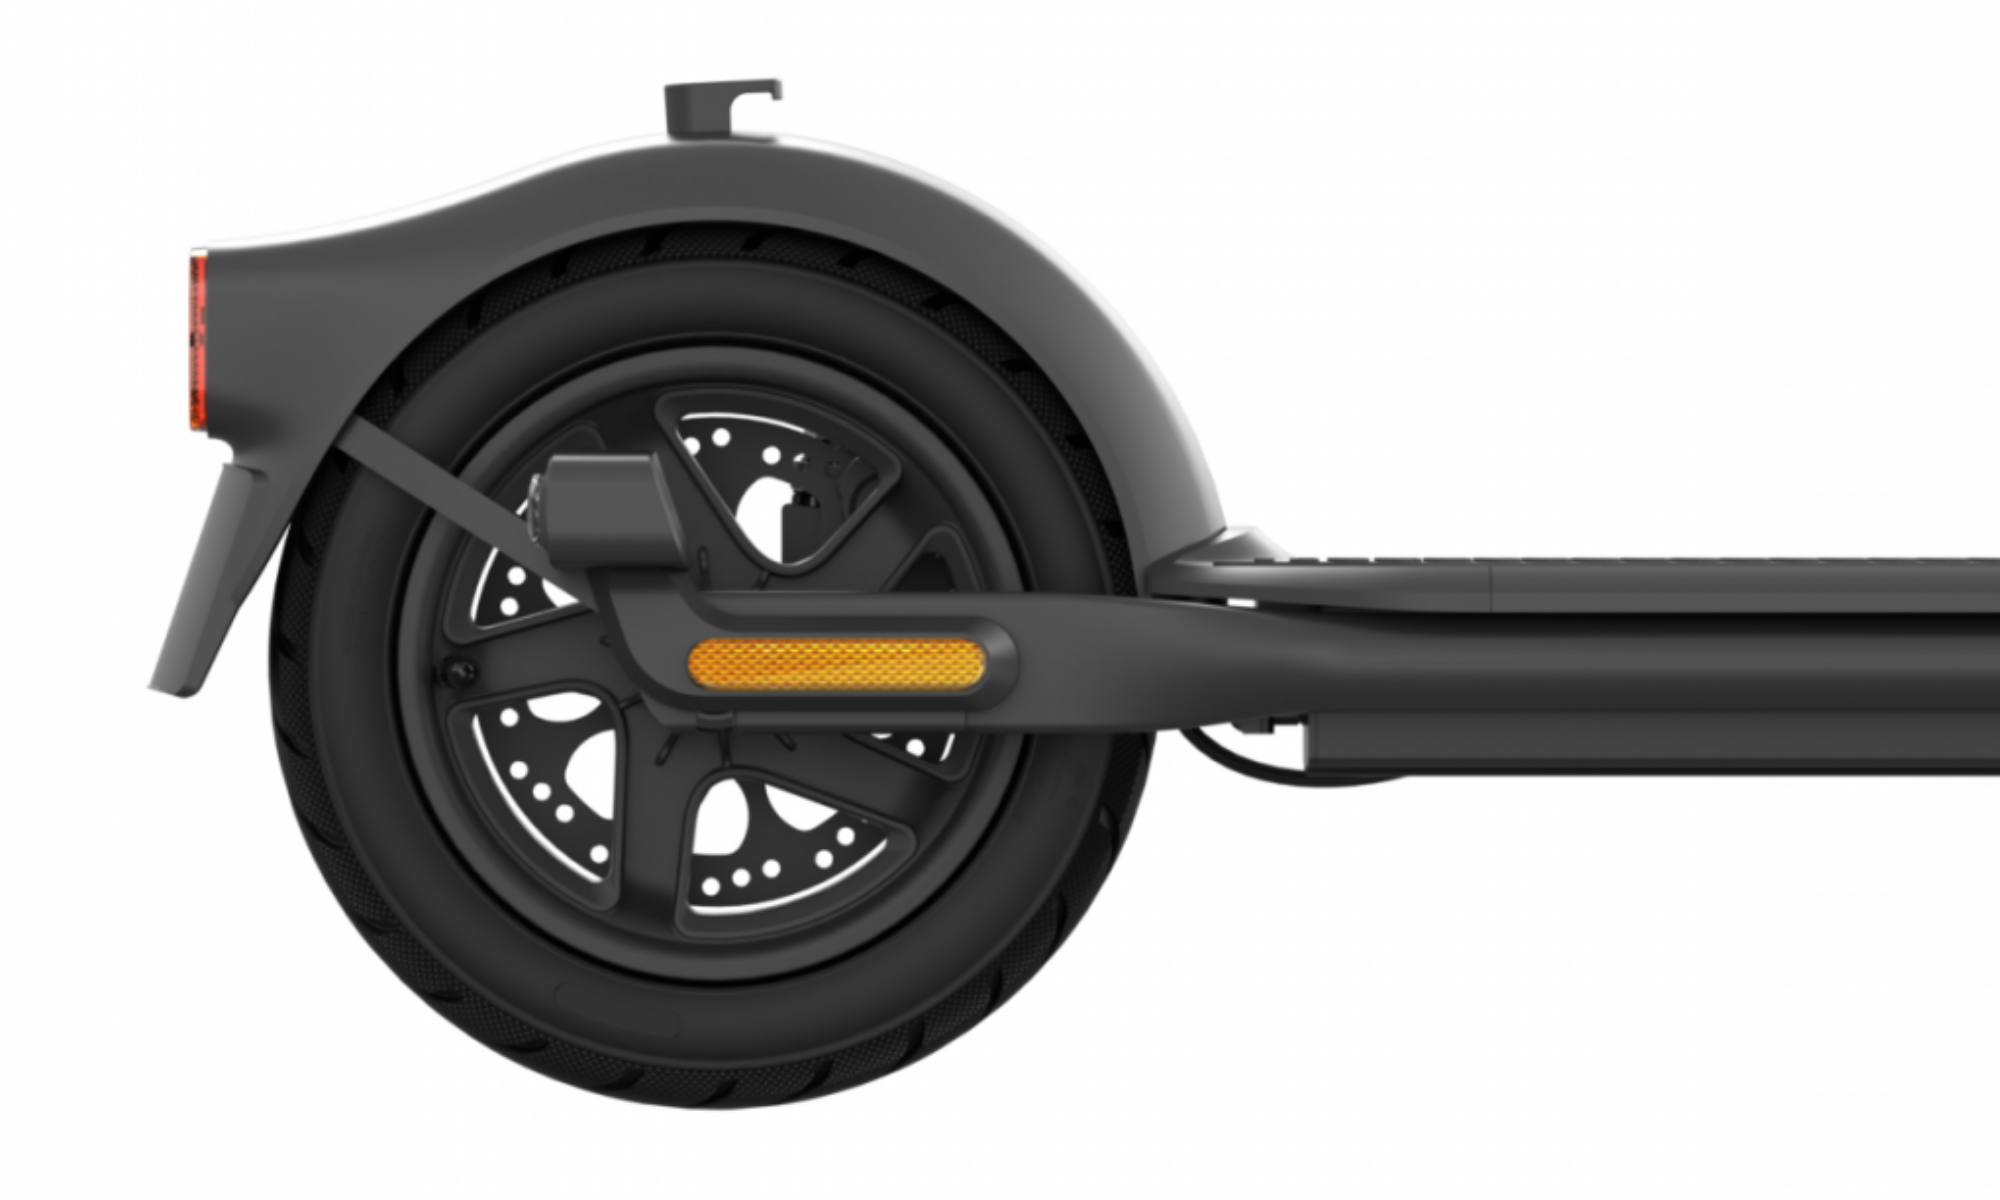 Las ruedas de este Ninebot KickScooter F40I de Segway son de 10 pulgadas y no tendrás que inflarlas nunca pues son macizas.